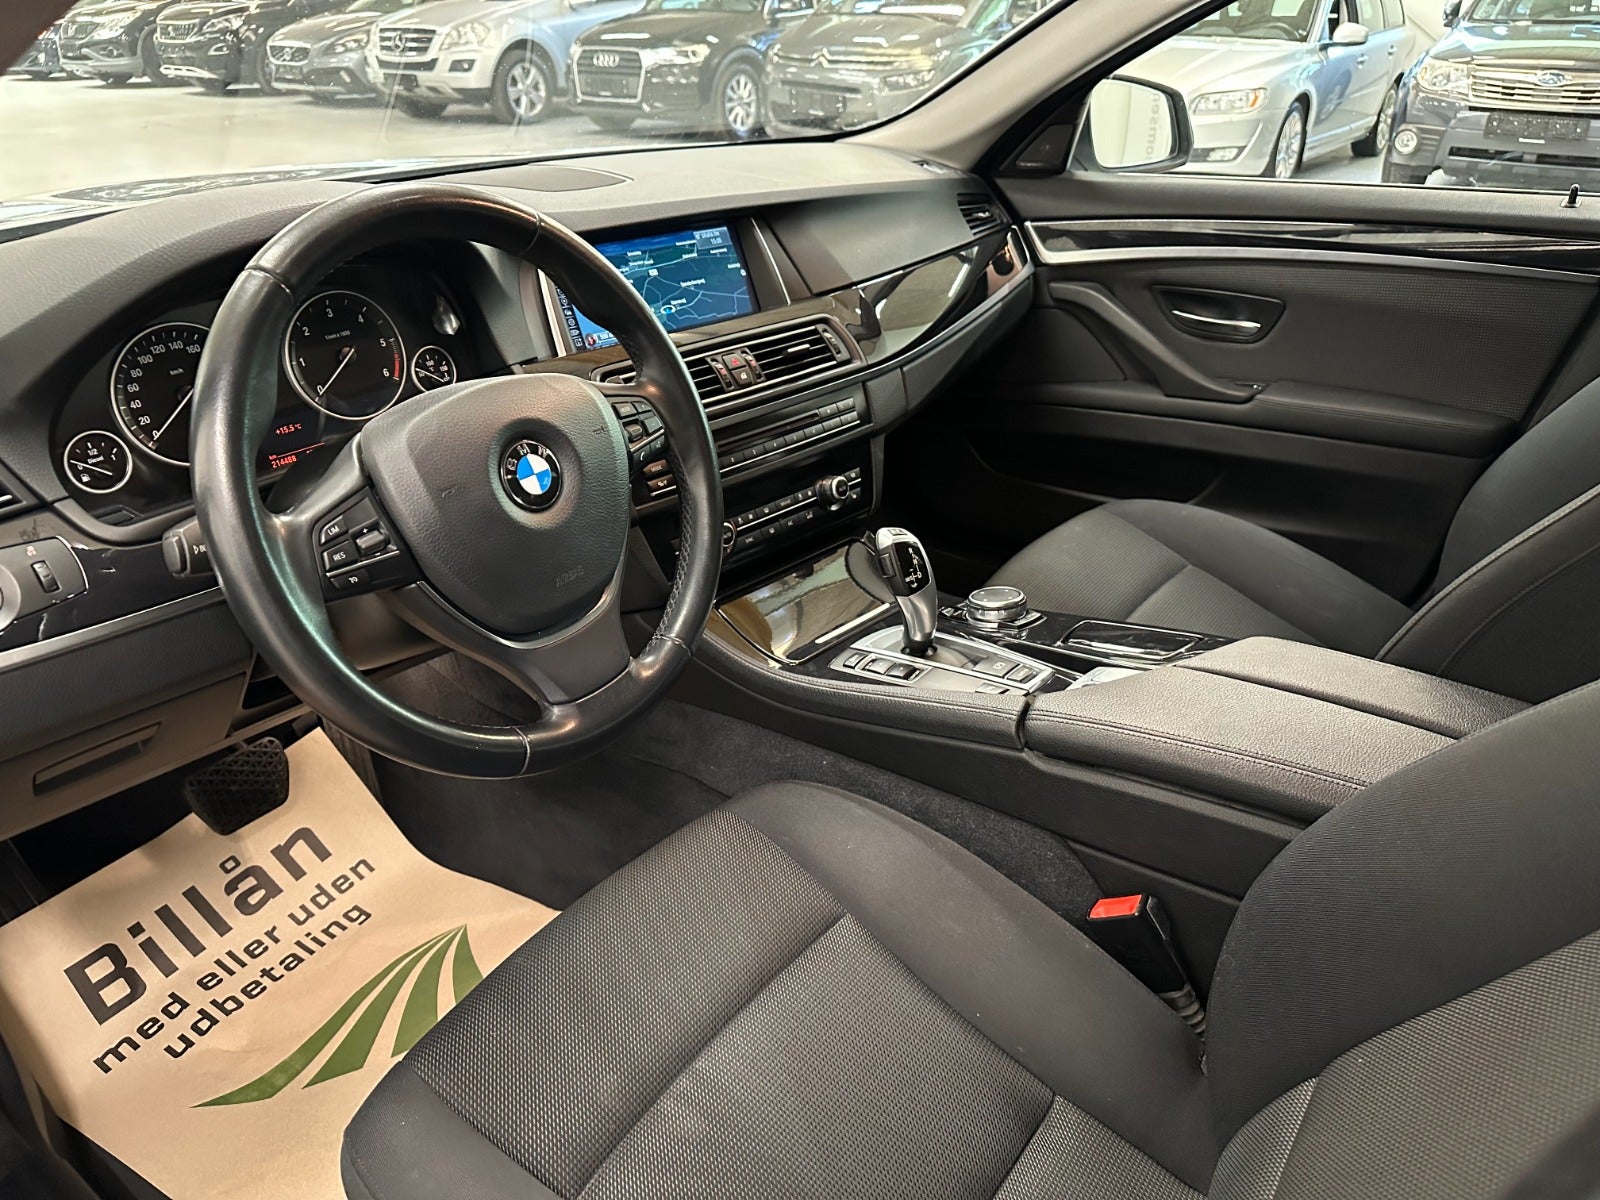 BMW 520d 2015